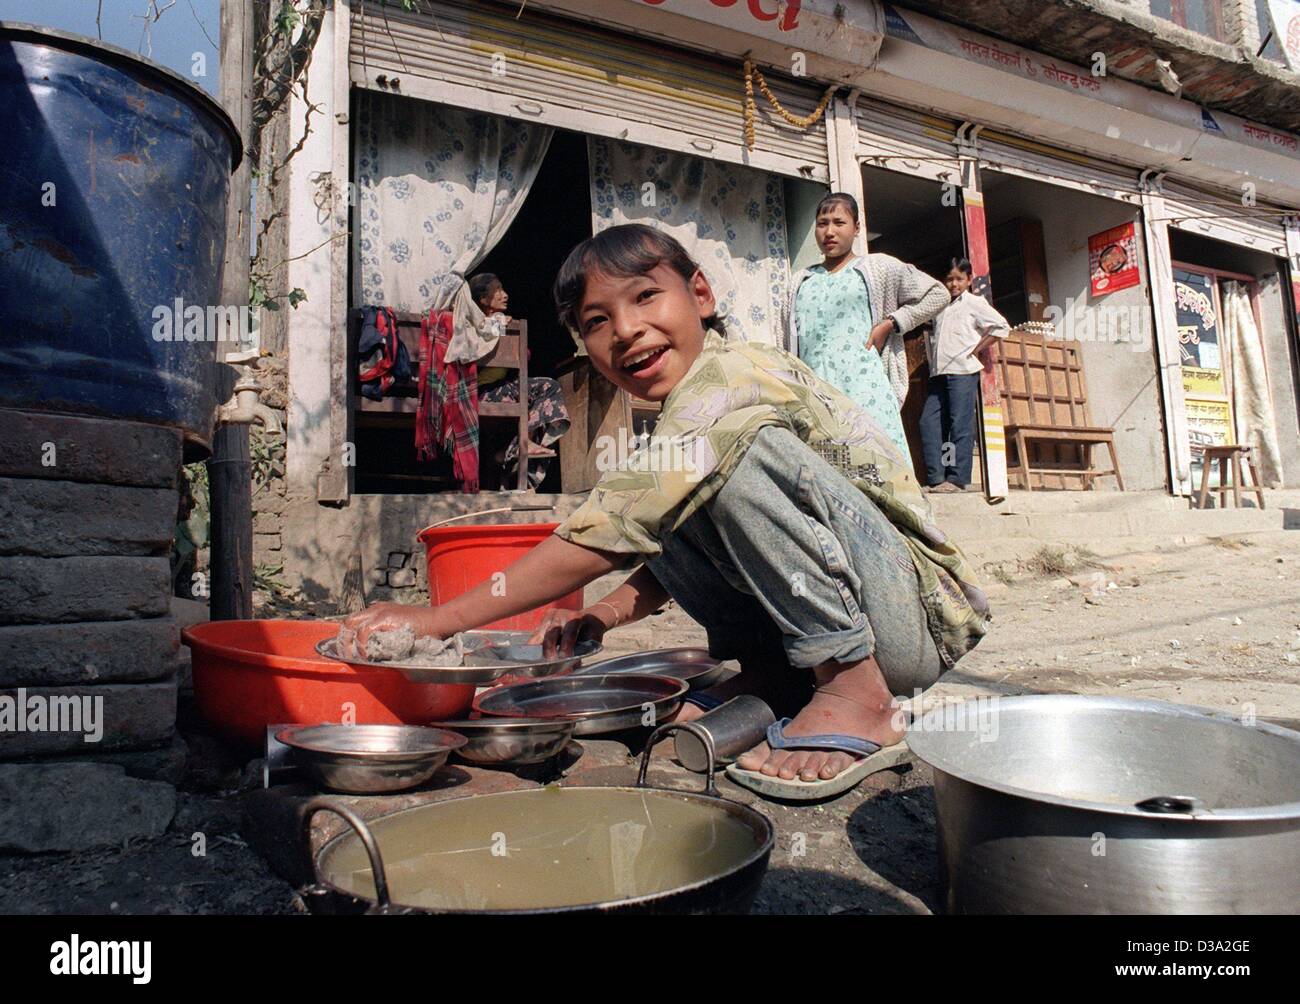 (Dpa) - una ragazza funziona come una lavastoviglie nella baraccopoli di Kathmandu in Nepal, 24 novembre 2000. Unicef cerca di aiutare i bambini a un futuro migliore con l'istruzione scolastica. Foto Stock